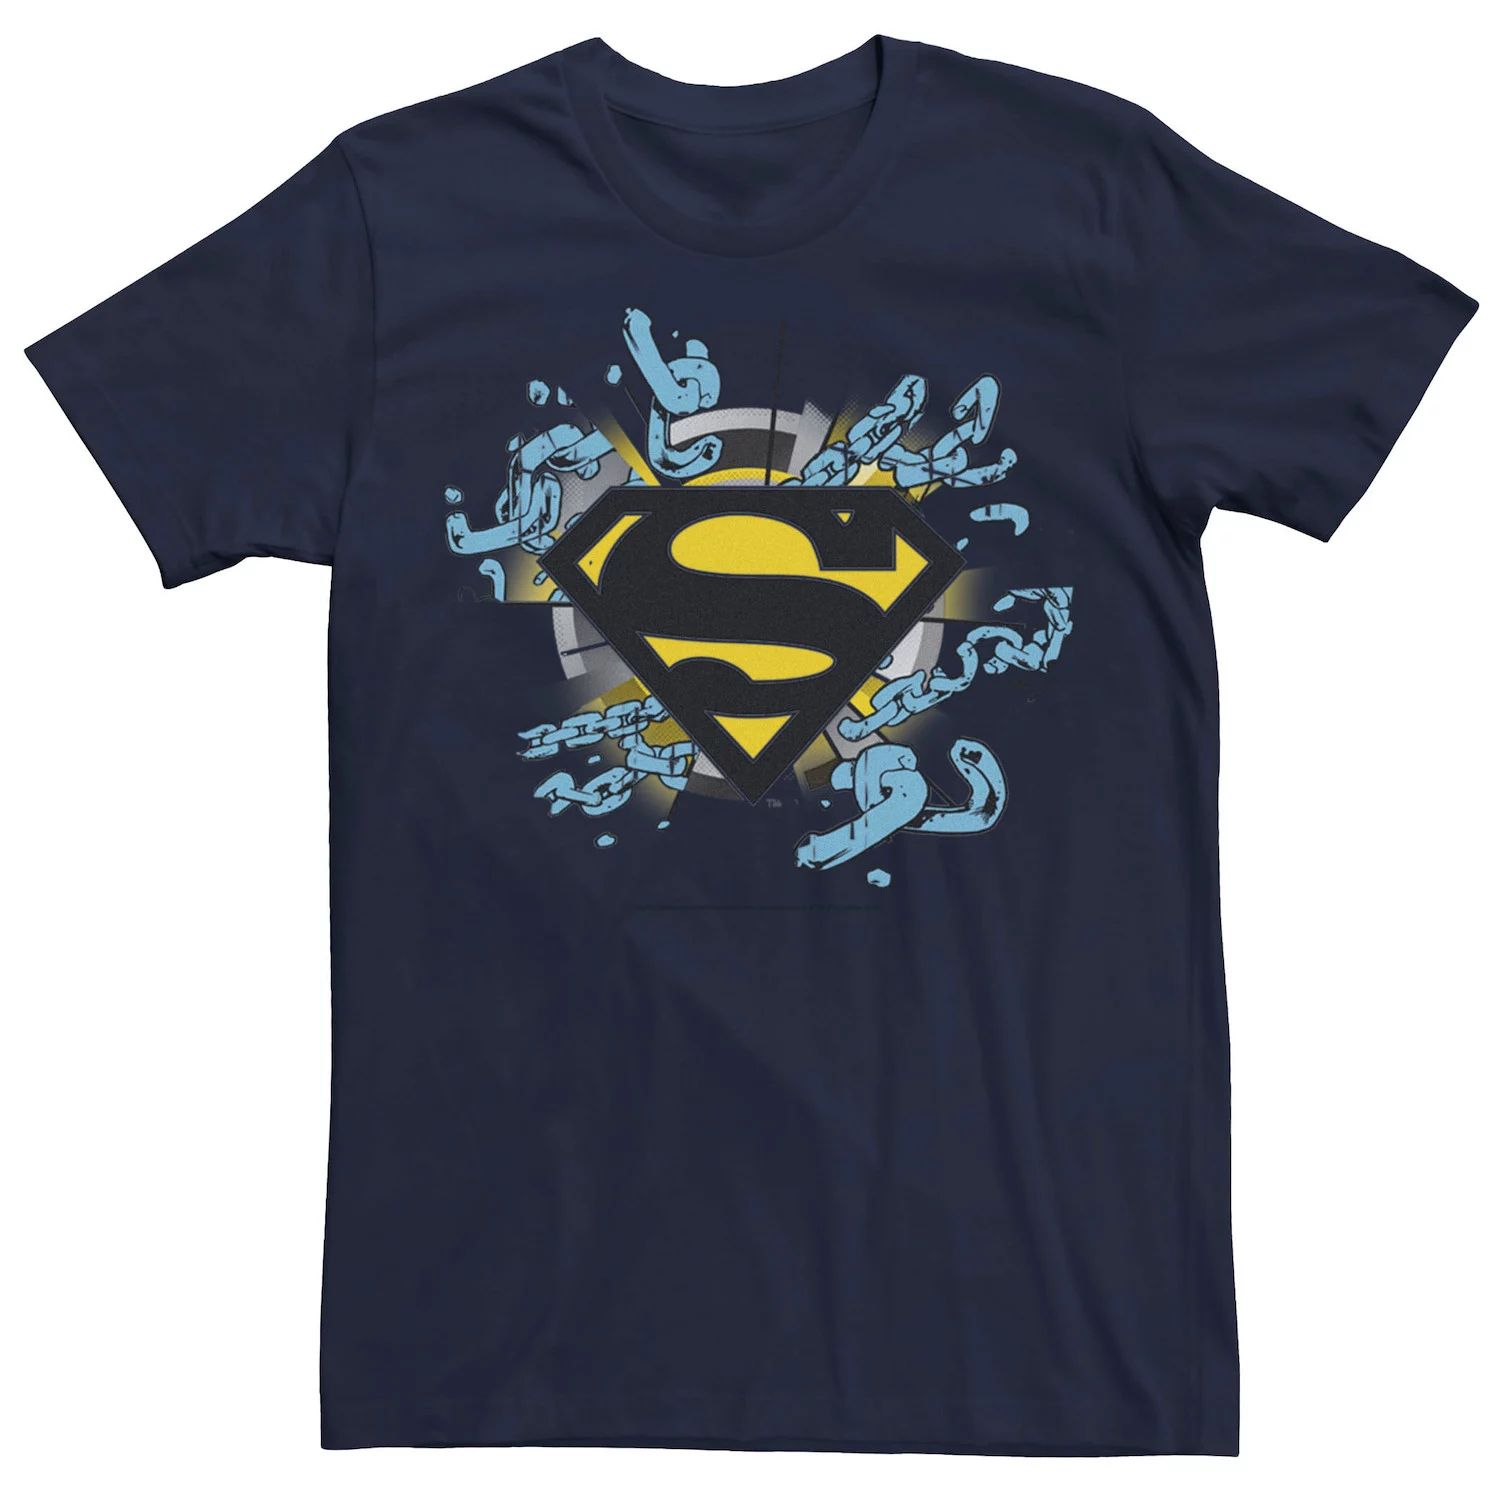 Мужская футболка с логотипом Superman Chain Link, Синяя DC Comics, синий